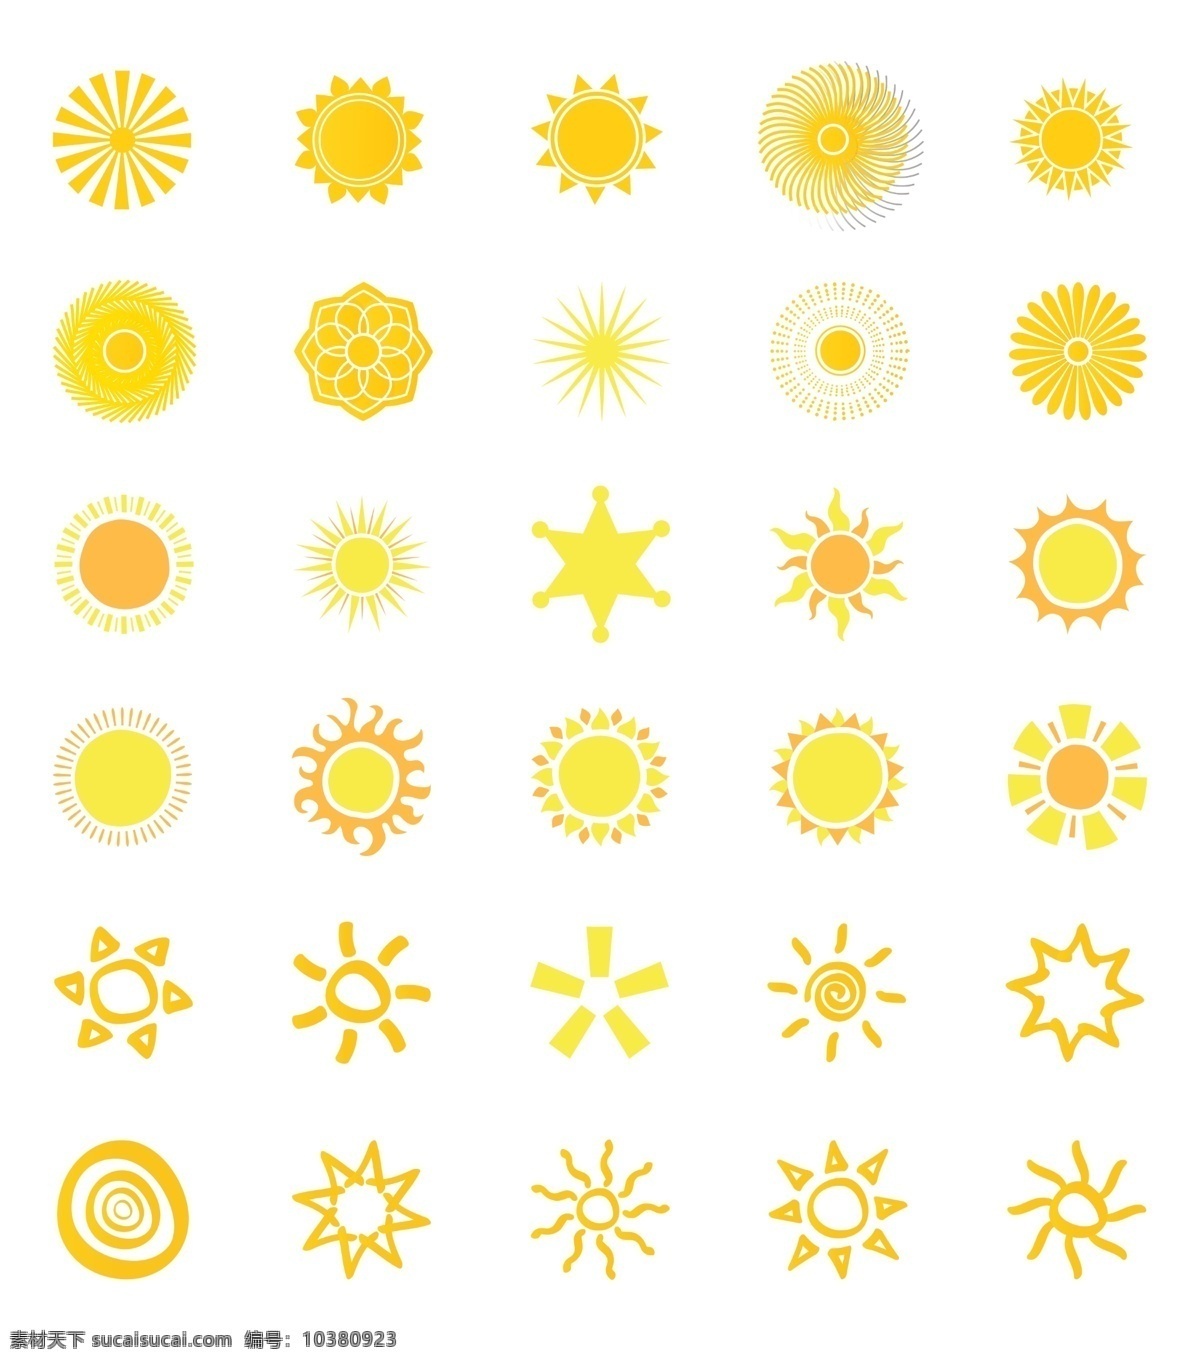 卡通太阳 太阳 太阳素材 太阳矢量图 太阳简笔画 手绘太阳